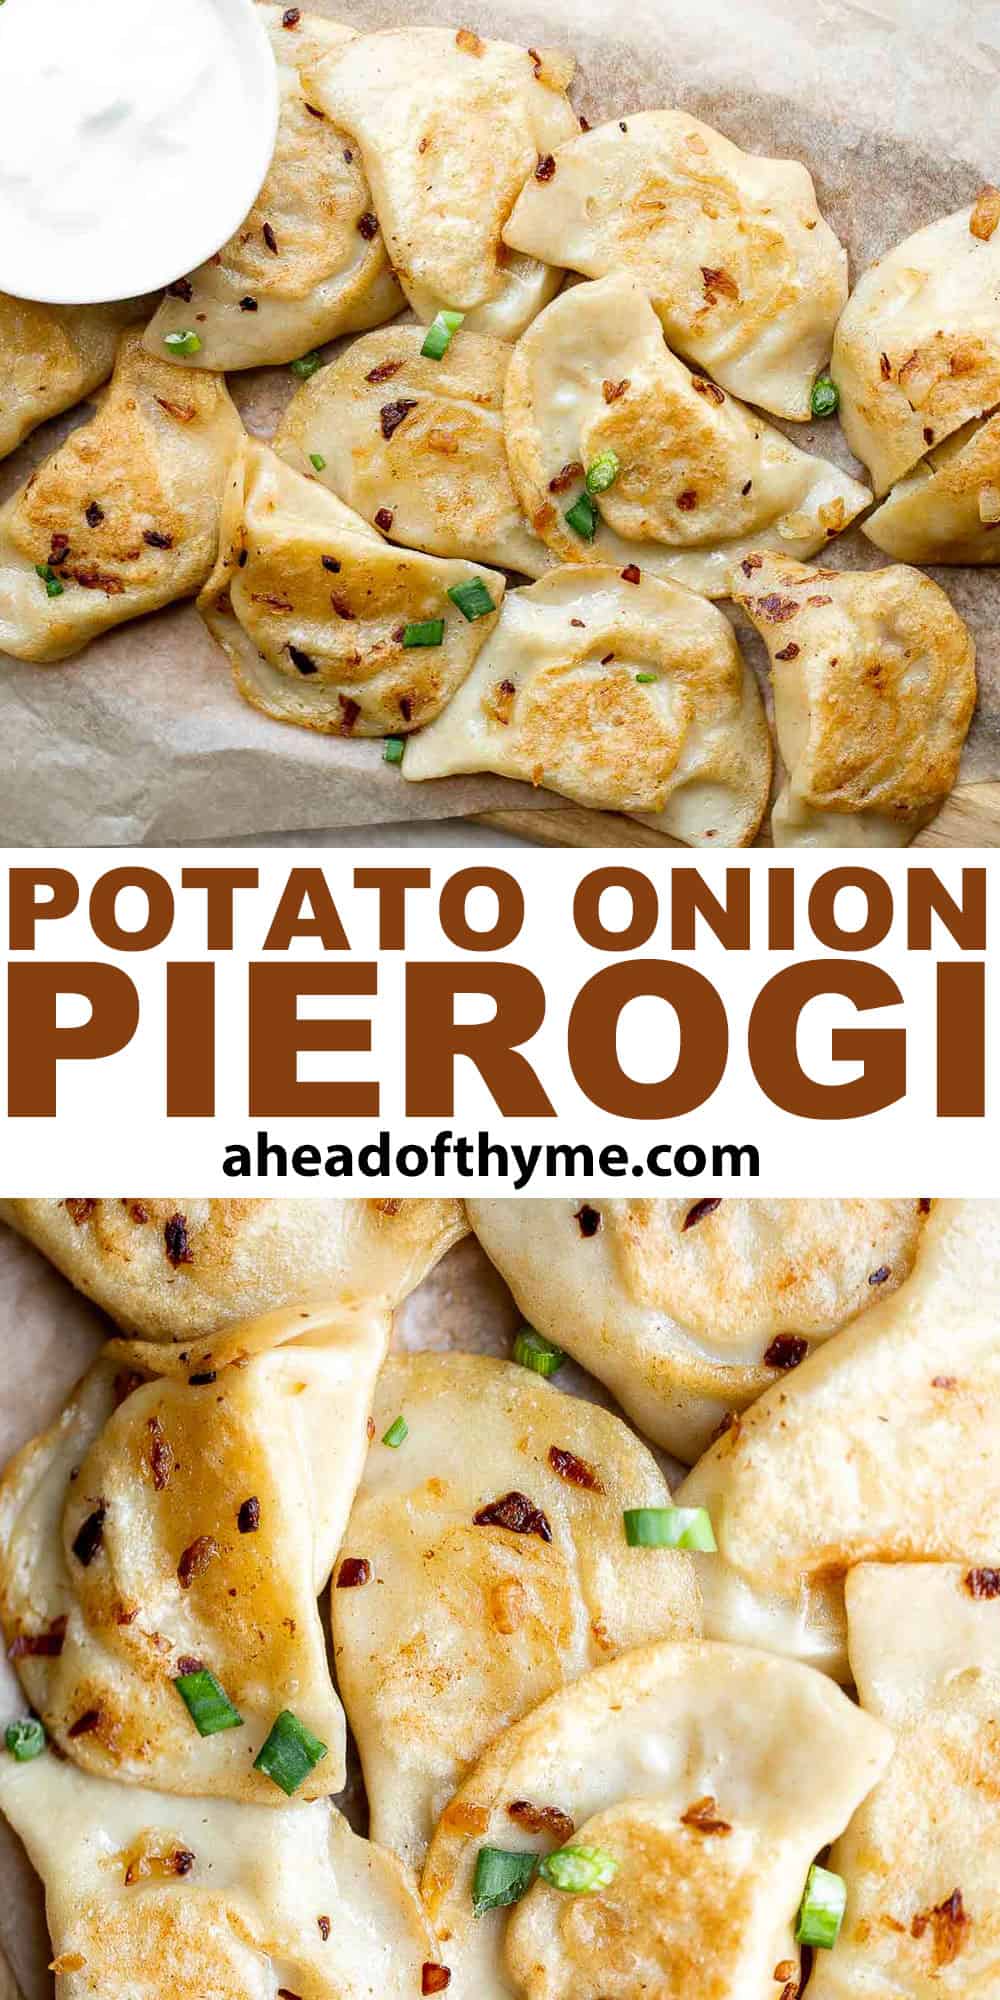 Potato Onion Pierogi